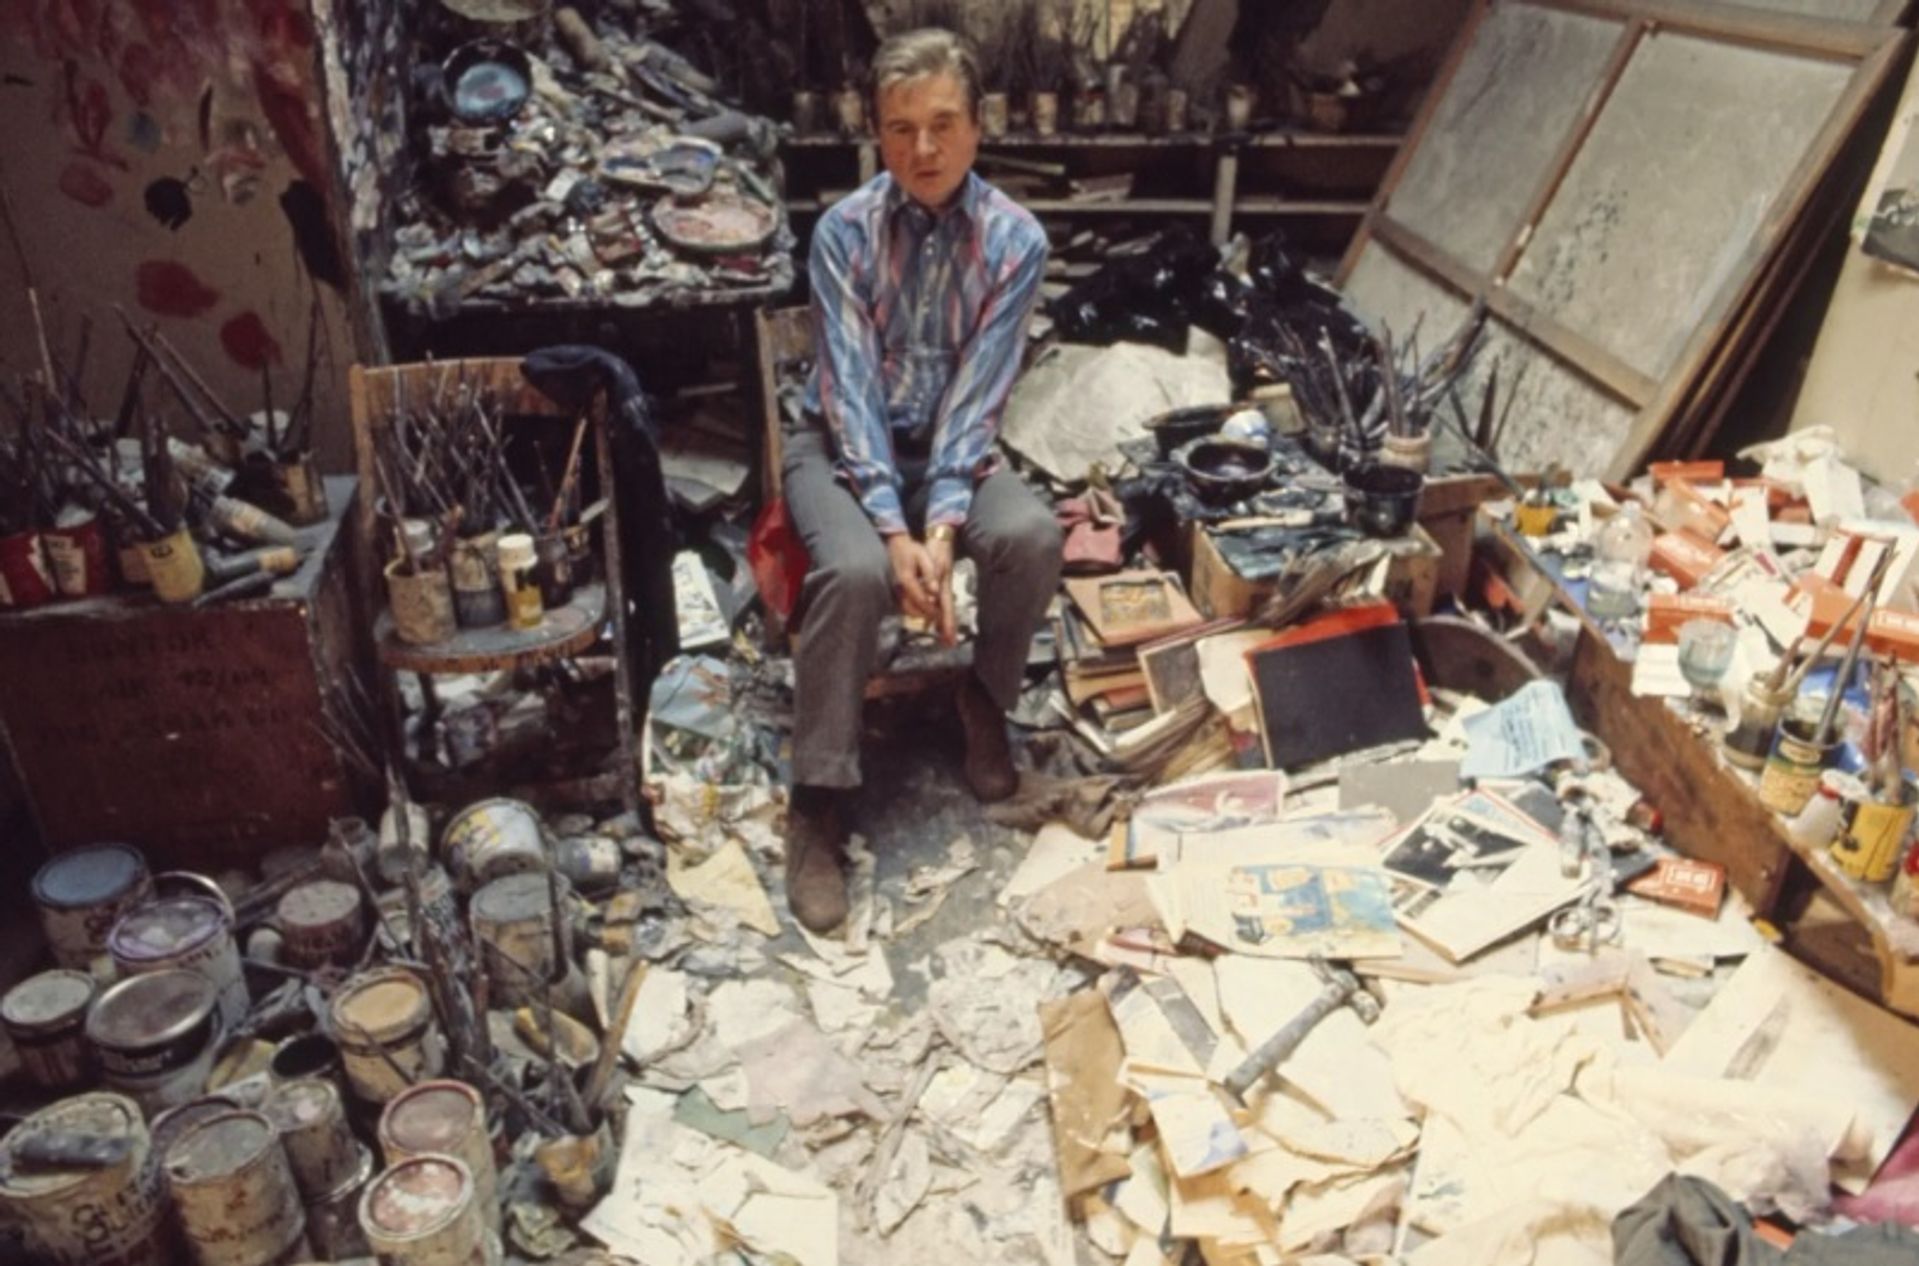 פרנסיס בייקון בסטודיו שלו בלונדון ב-1974

צילום: מיכאל הולץ; תמונה 12 / תמונה מאת Alamy